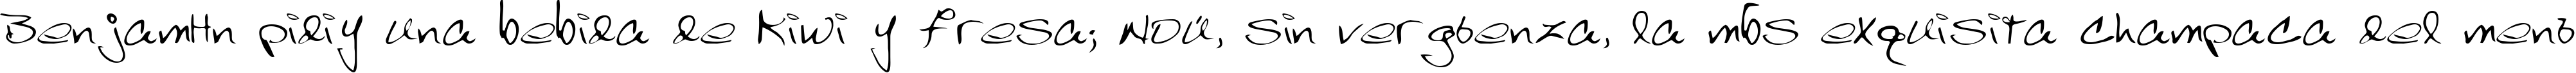 Пример написания шрифтом Scrawl текста на испанском